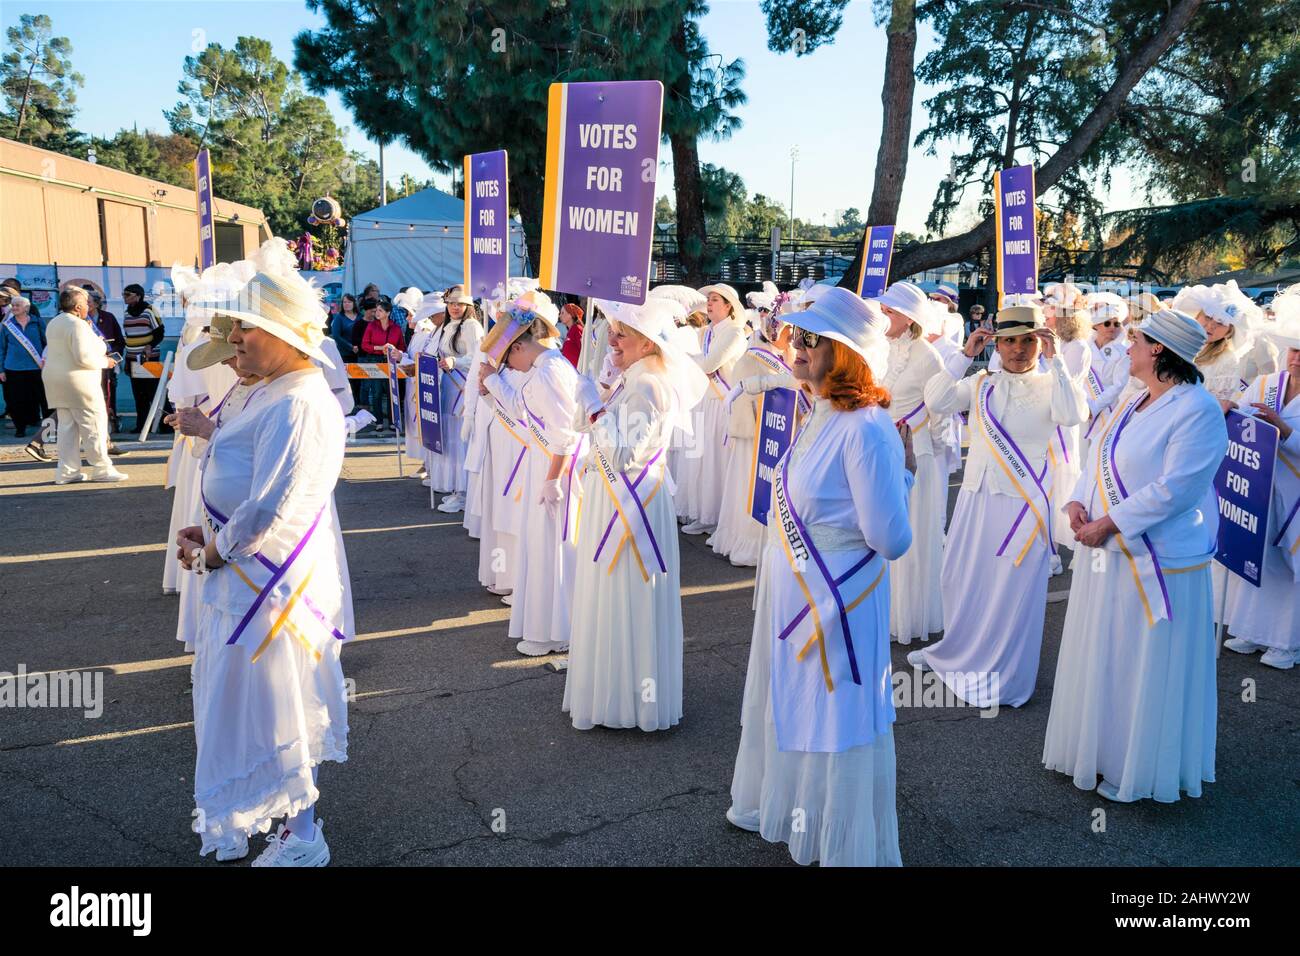 Centennial Celebration for 19th Emendamento Iniziato A Rose Parade a Pasadena, CA con galleggiante floreale, seguito da 98 donne che onorano suffragi Foto Stock